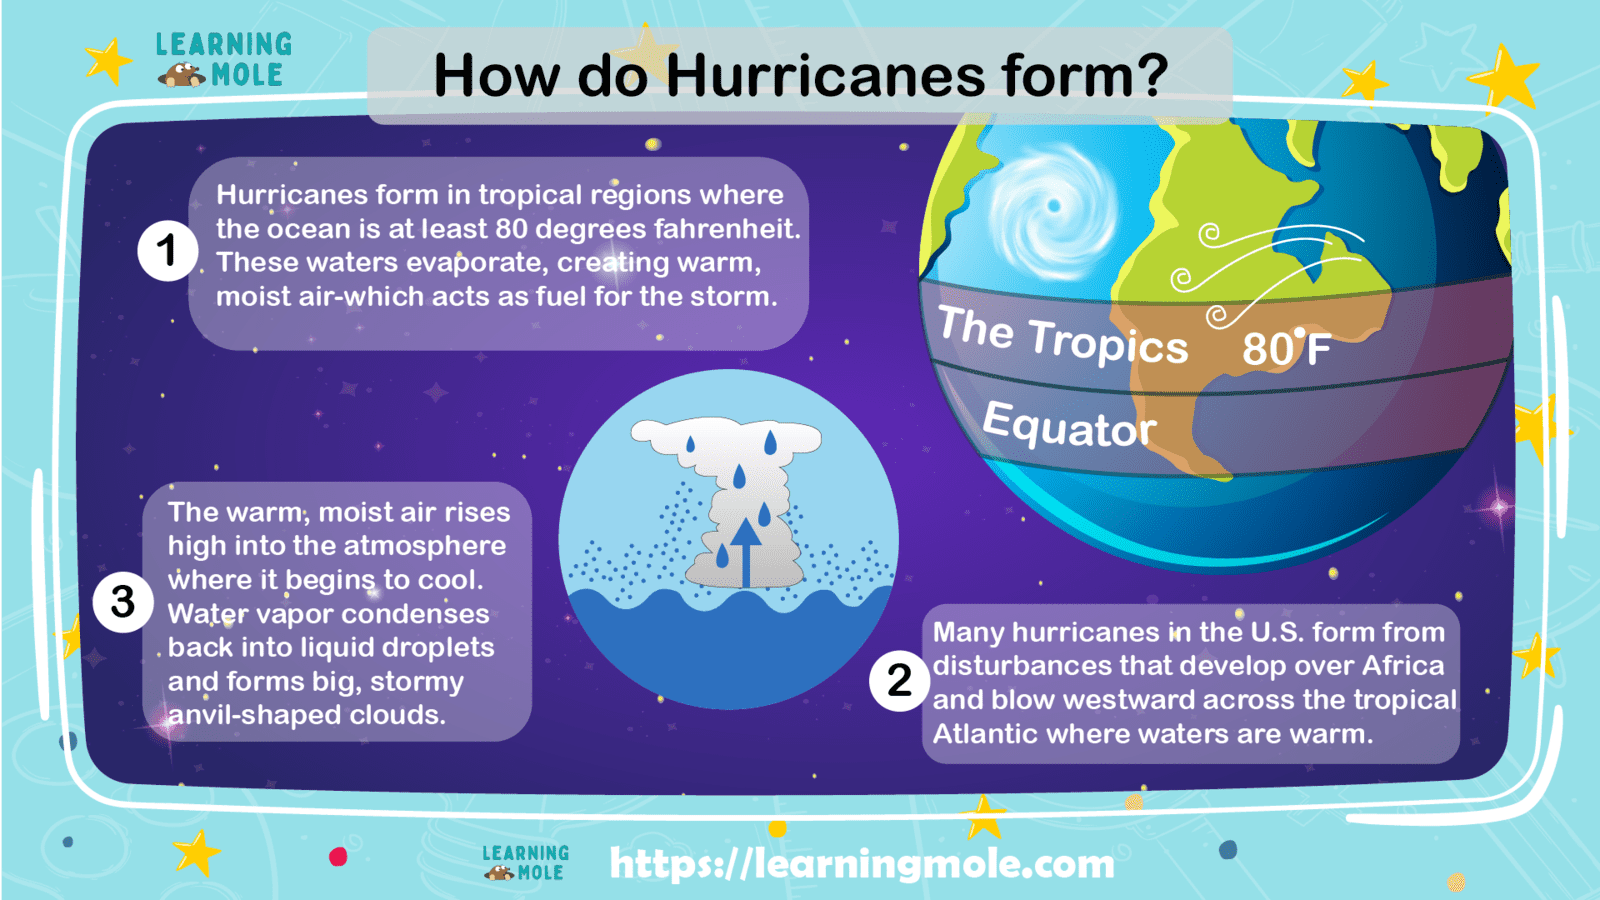 How do hurricanes form?